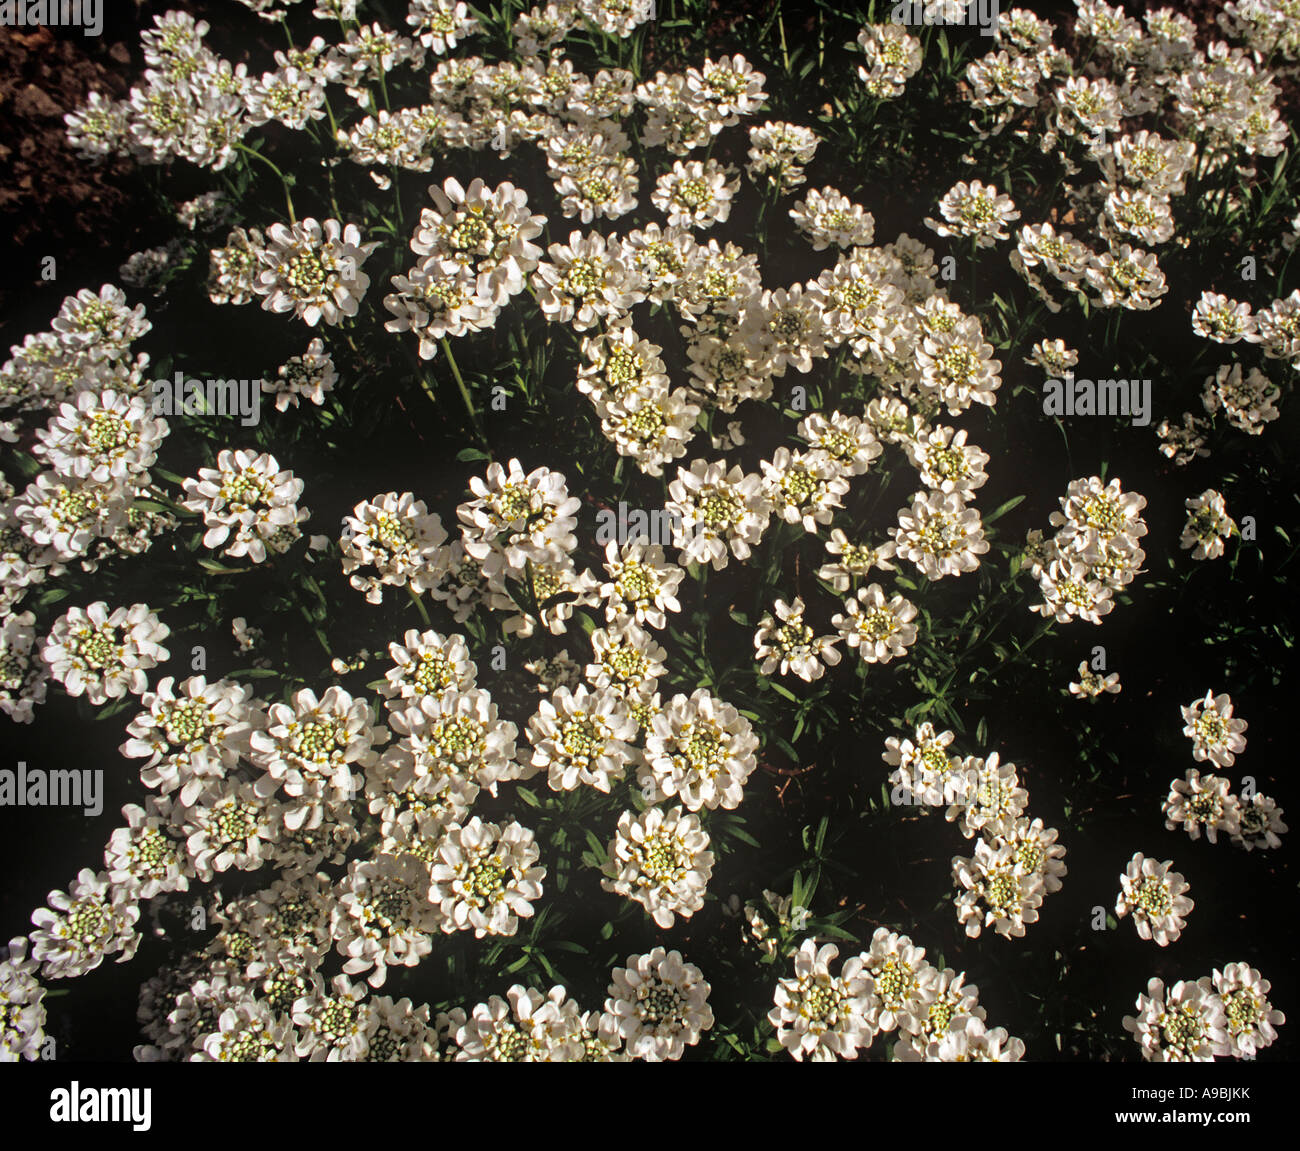 Iberis amara Candytuft comunes pequeñas flores blancas fragantes en densos racimos anual tupida Foto de stock